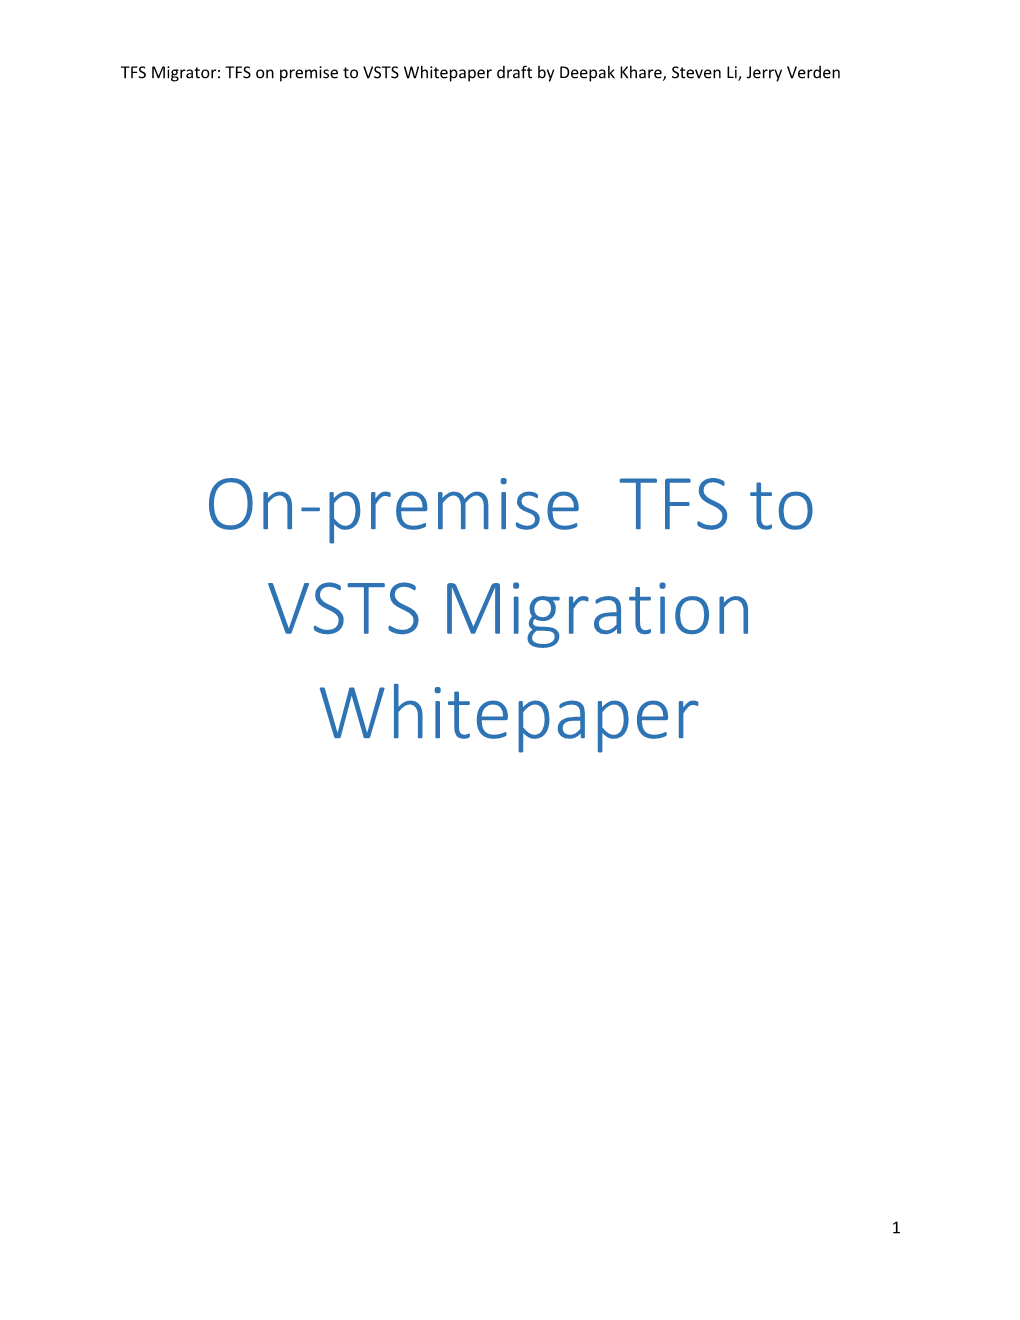 TFS Migrator: TFS on Premise to VSTS Whitepaper Draft by Deepak Khare, Steven Li, Jerry Verden